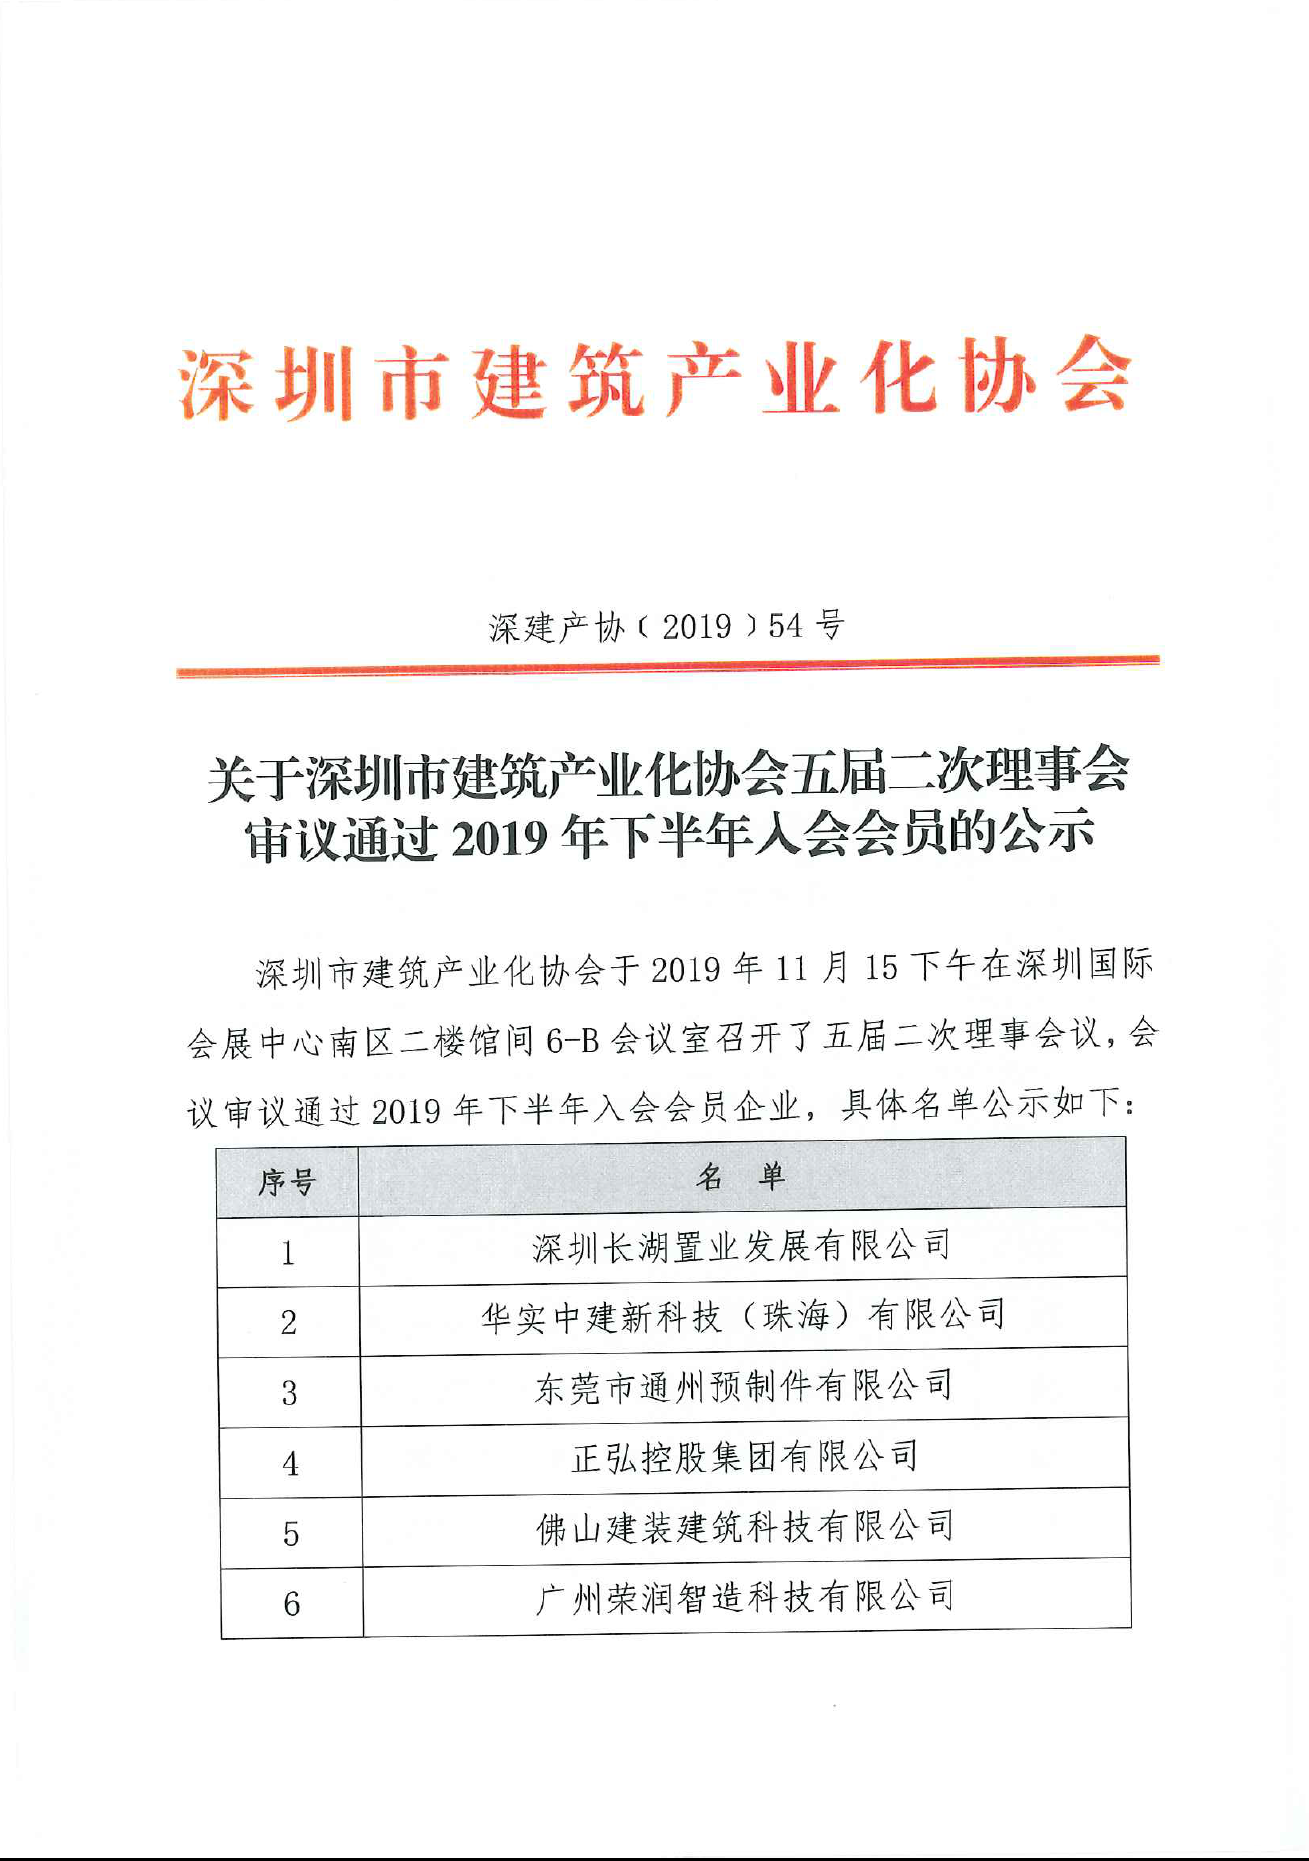 关于深圳市建筑产业化协会五届二次理事会审议通过2019年下半年入会会员的公示